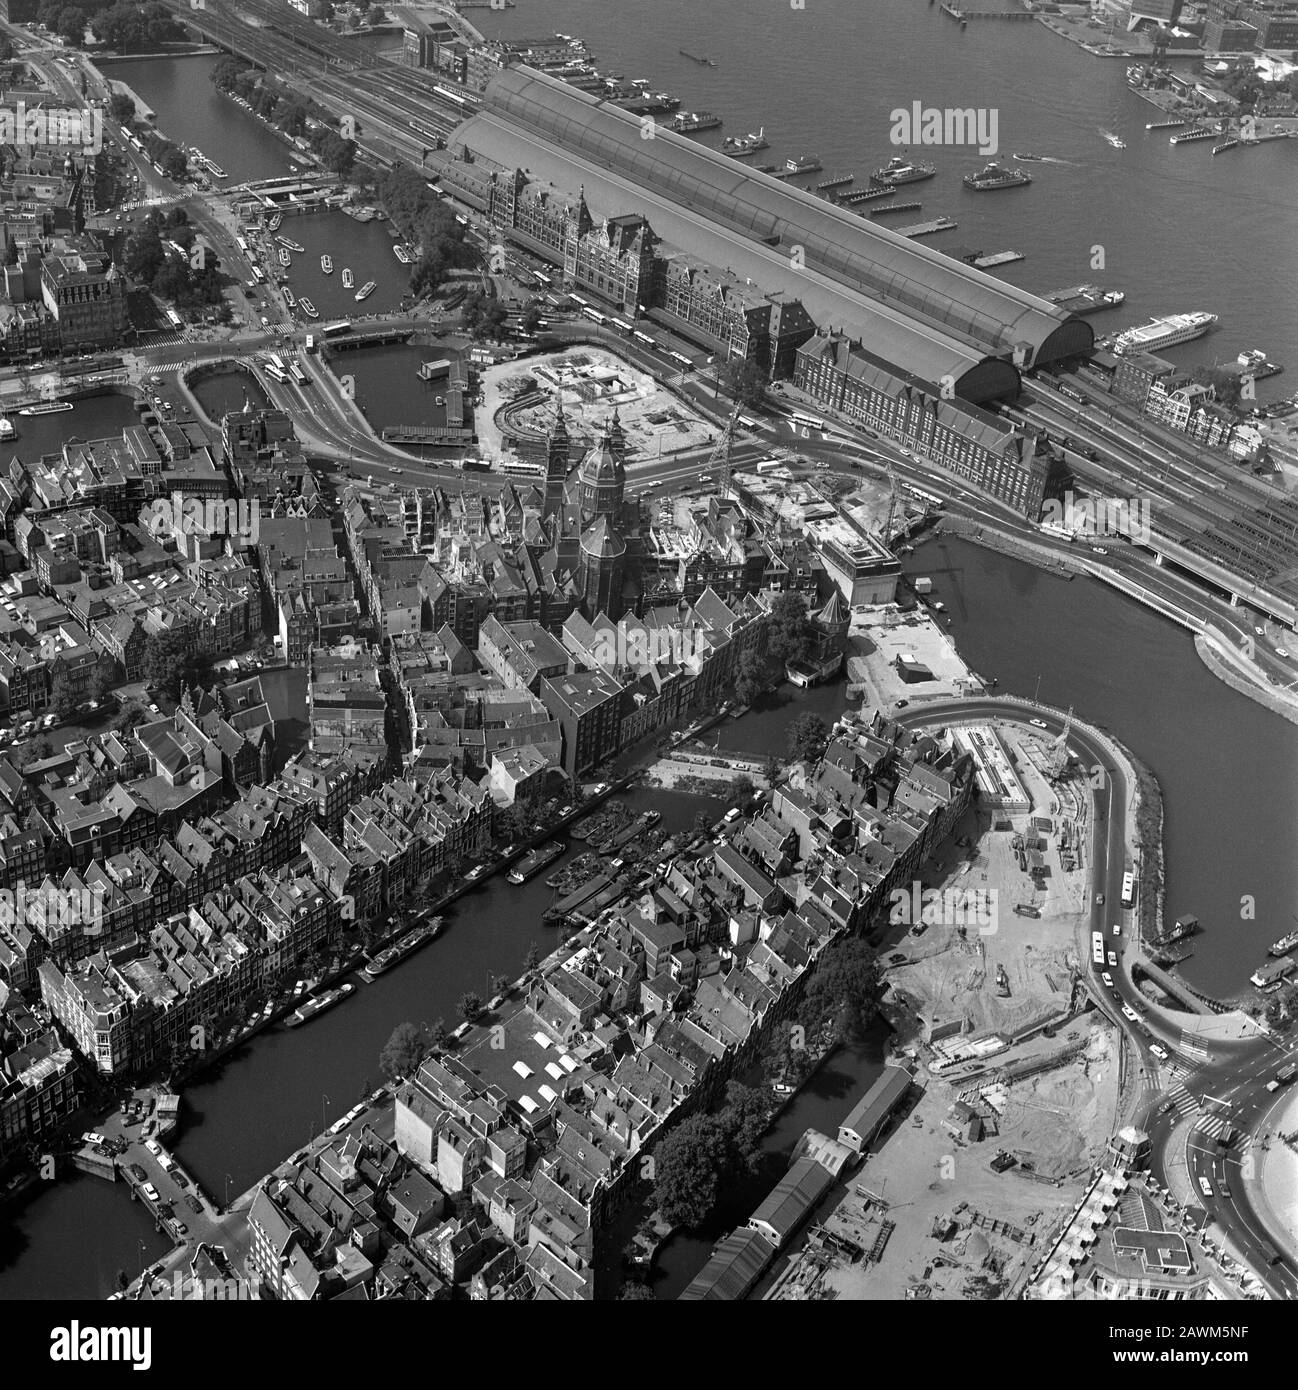 Amsterdam, Olanda, 12 luglio 1977: Foto aerea storica della Stazione Centrale di Amsterdam, Olanda in bianco e nero Foto Stock